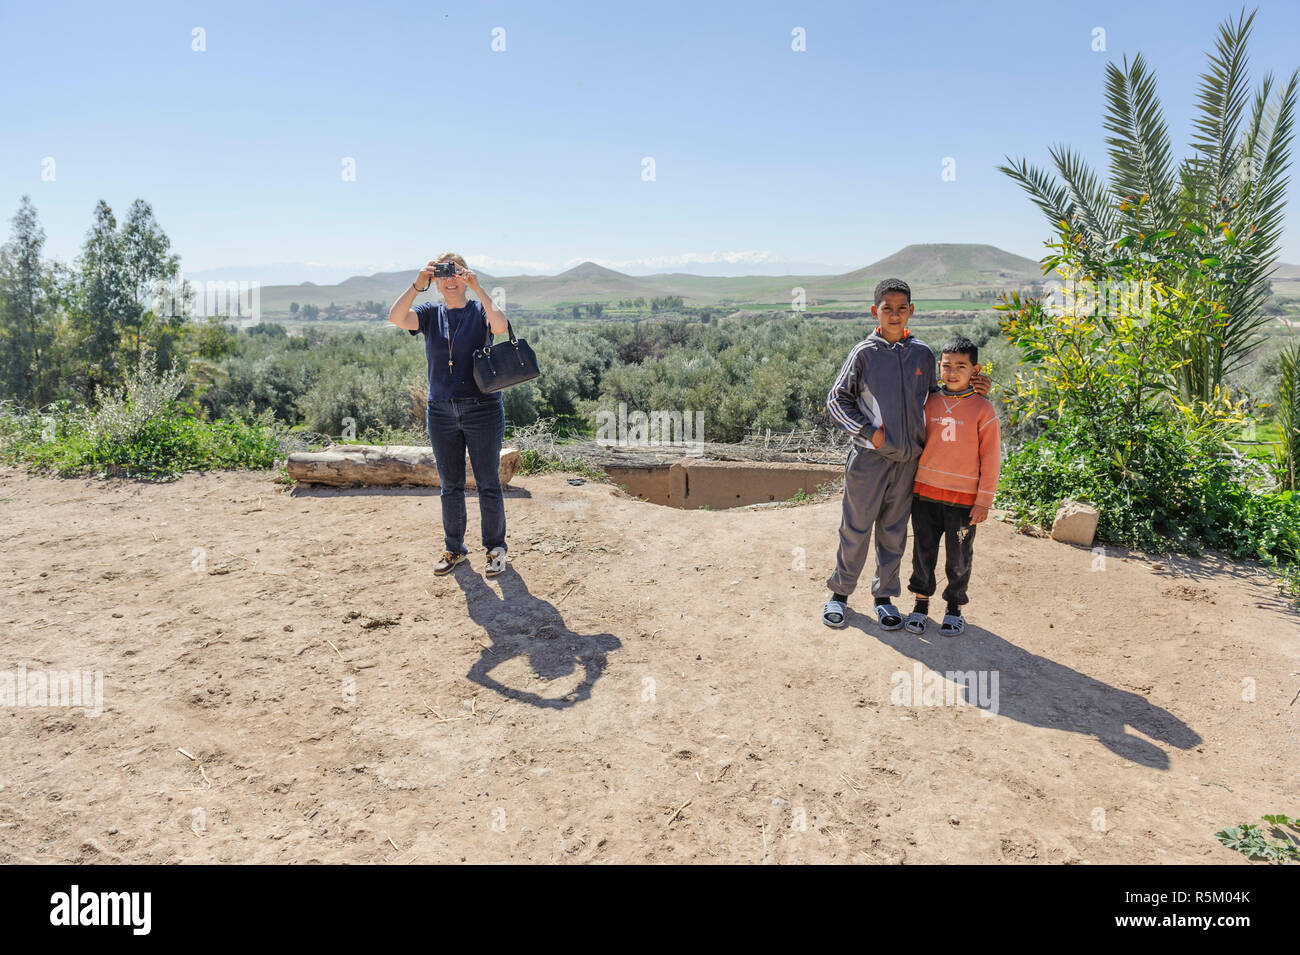 01-03-15, Marrakech, Marocco. Due giovani ragazzi berbero di stand e pongono in prossimità di un turista scattare una fotografia su un iPhone. Foto: ©Simone Grosset Foto Stock